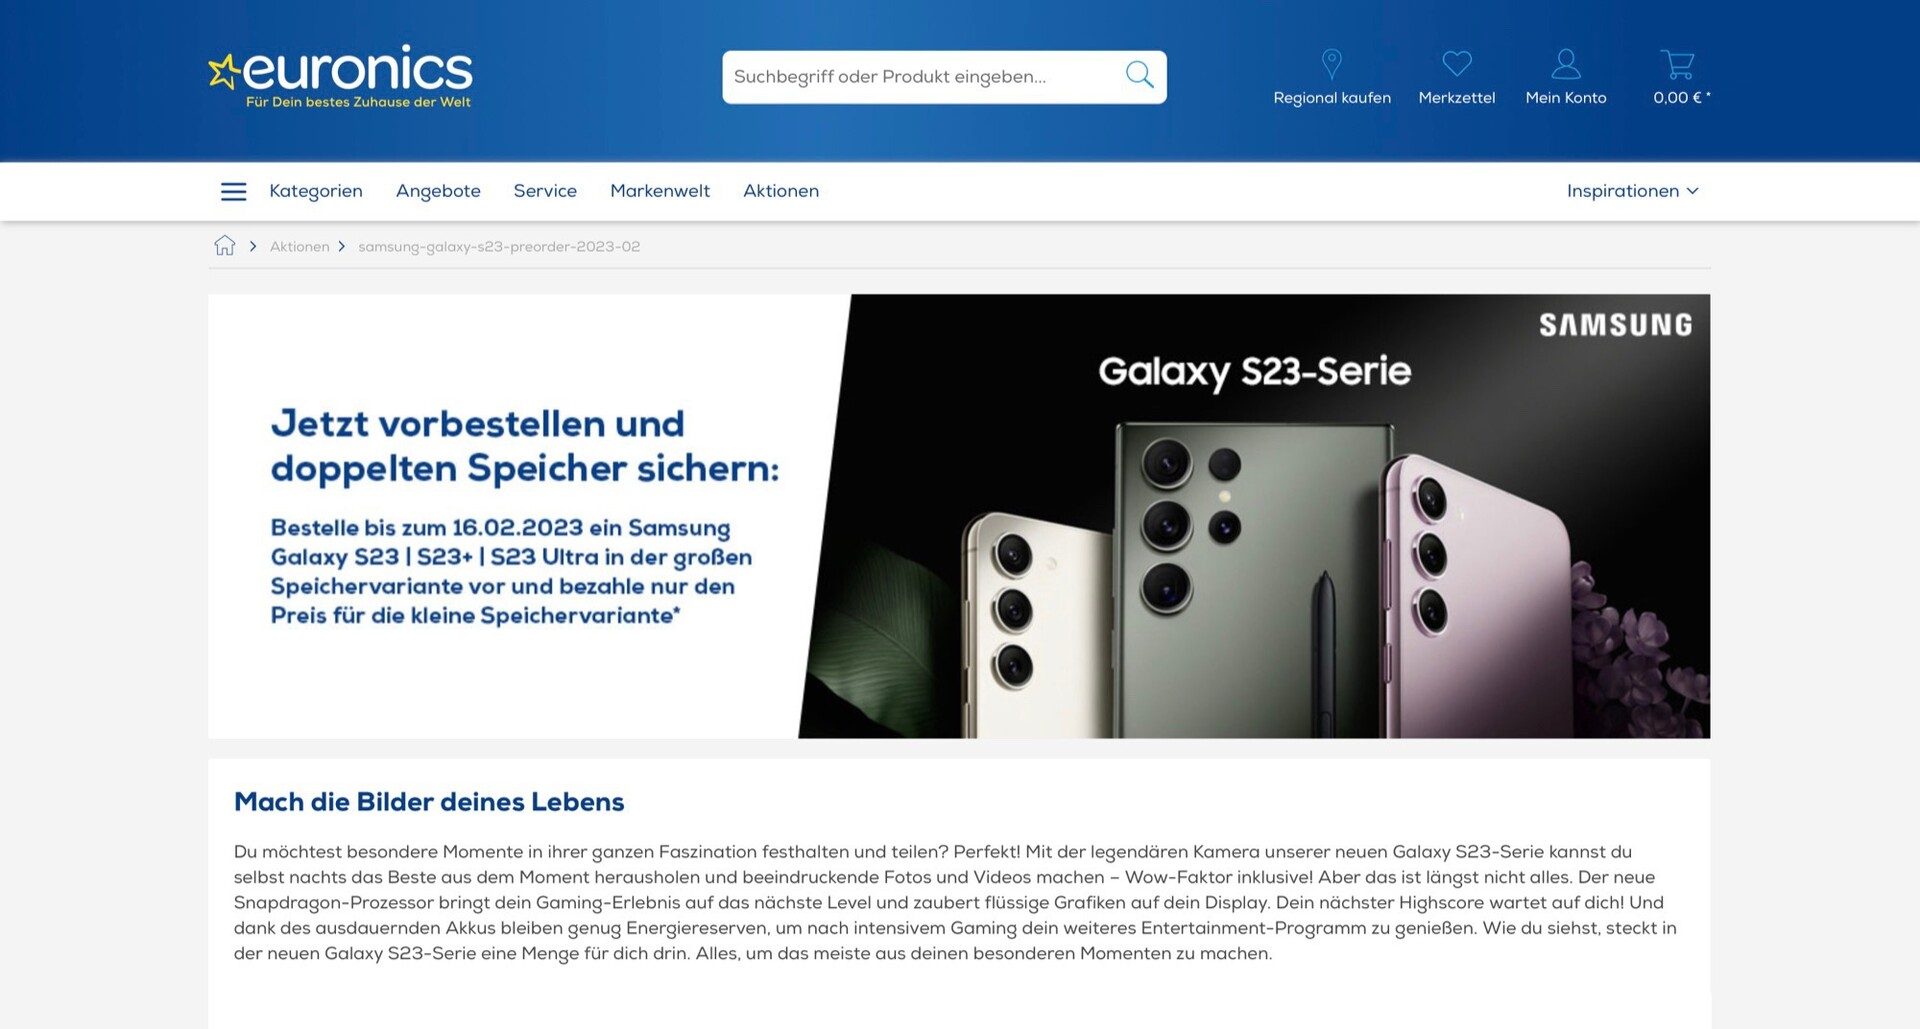 Samsung Galaxy S23 Ultra: Alle Spezifikationen & Preise